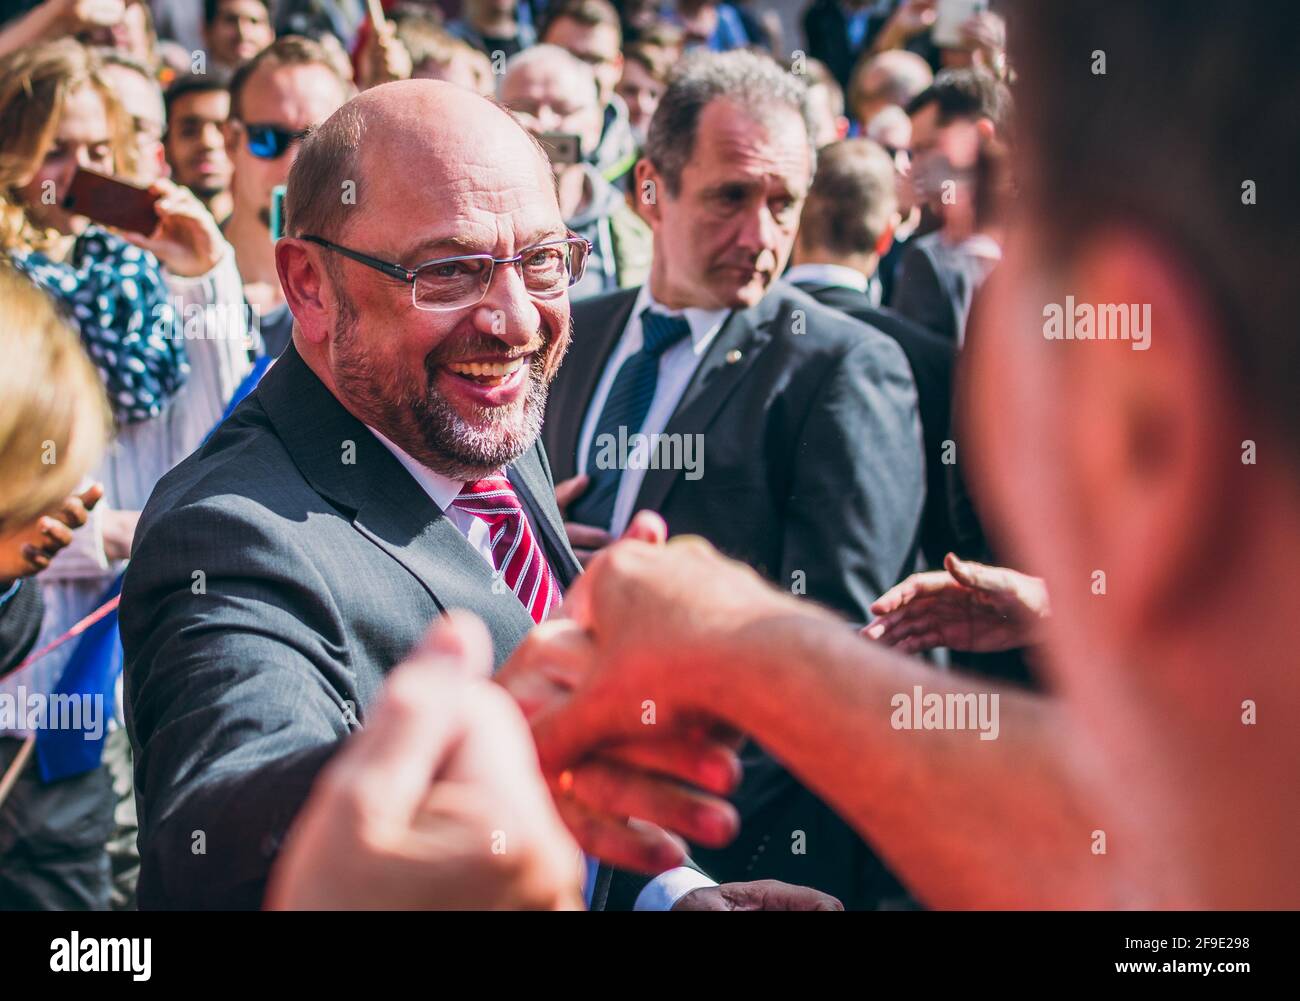 Aachen, Deutschland - 23. September 2017: Martin Schulz, deutscher Politiker und Sozialdemokrat-Kandidat für das Kanzleramt, trifft Bürger während der Elek Stockfoto